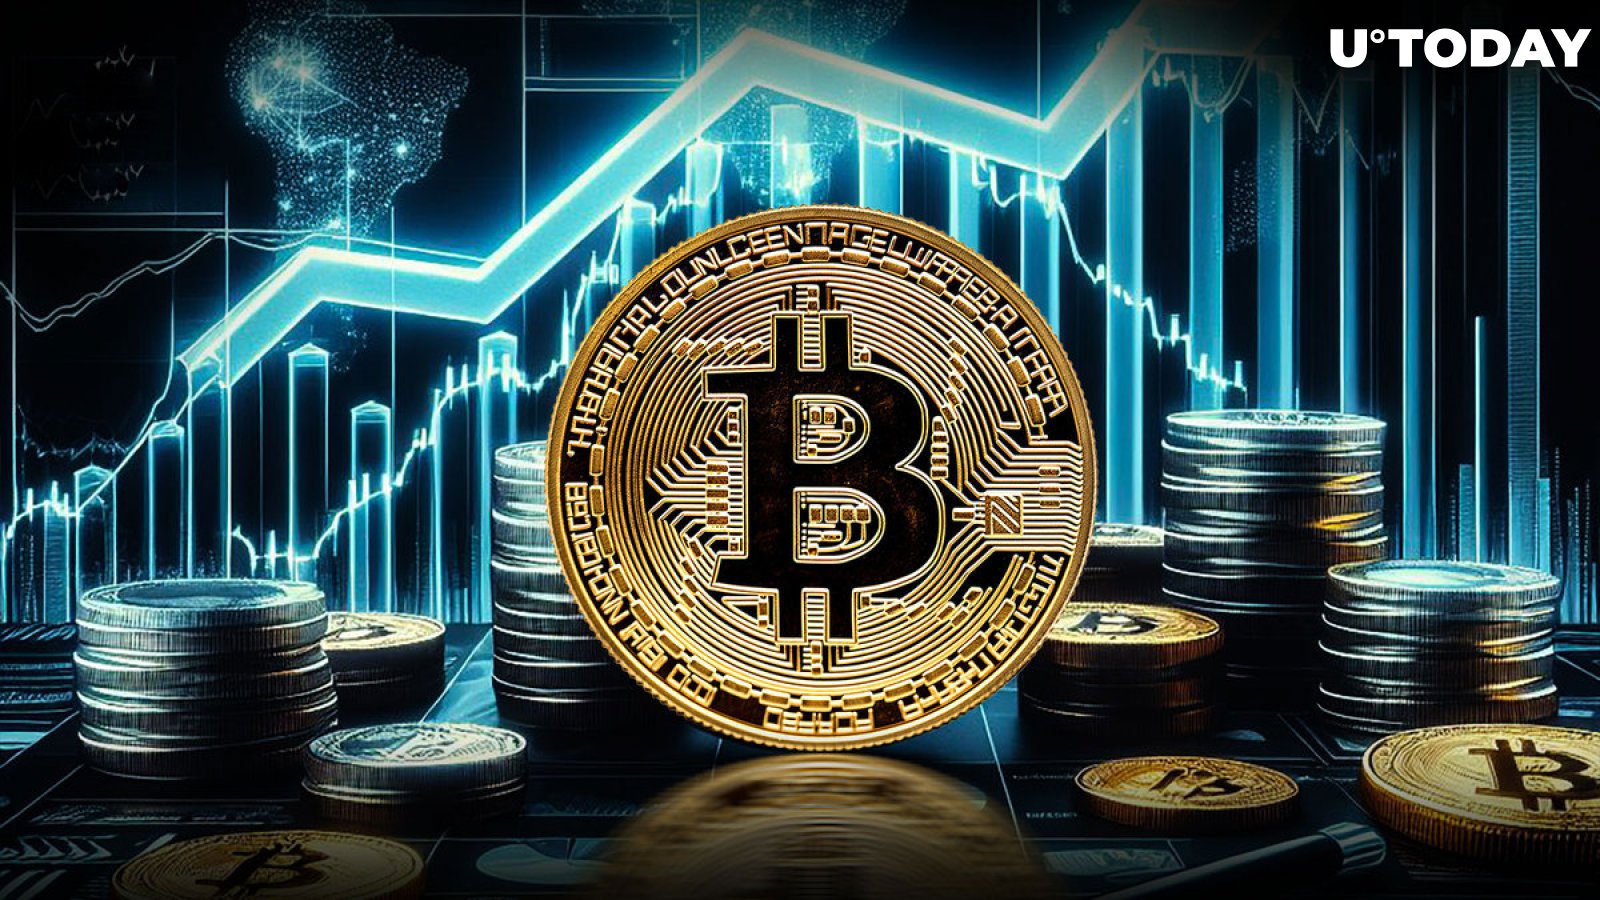 $46,000,000,000: Bitcoin breaks a major milestone in addition to ATH